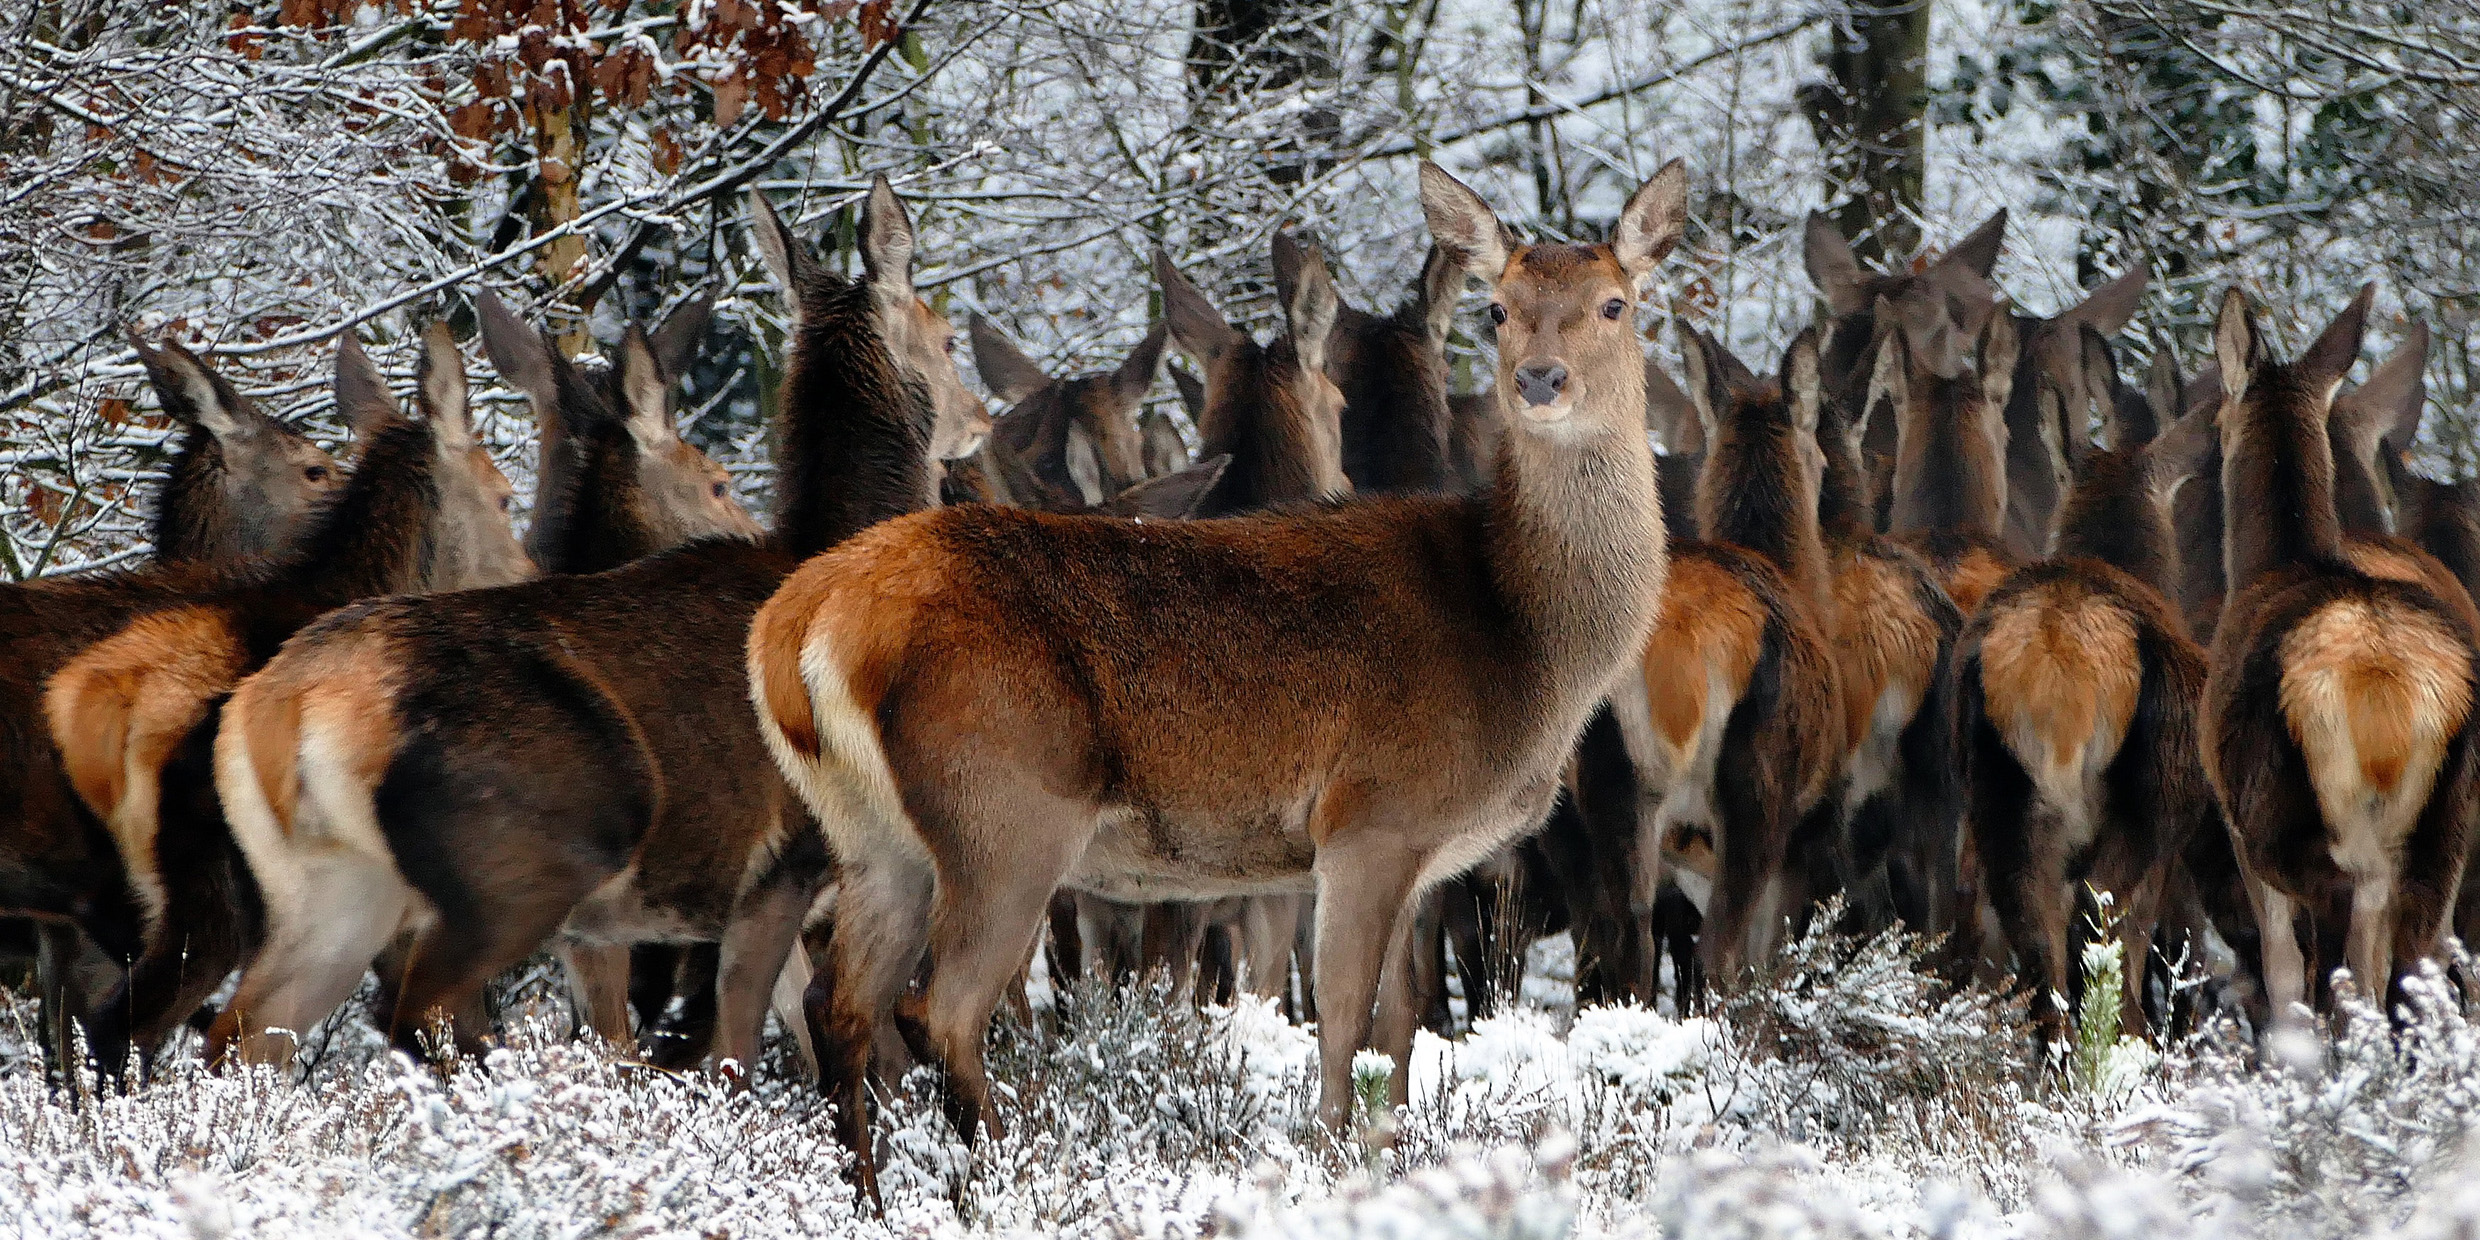 Image of deer herd